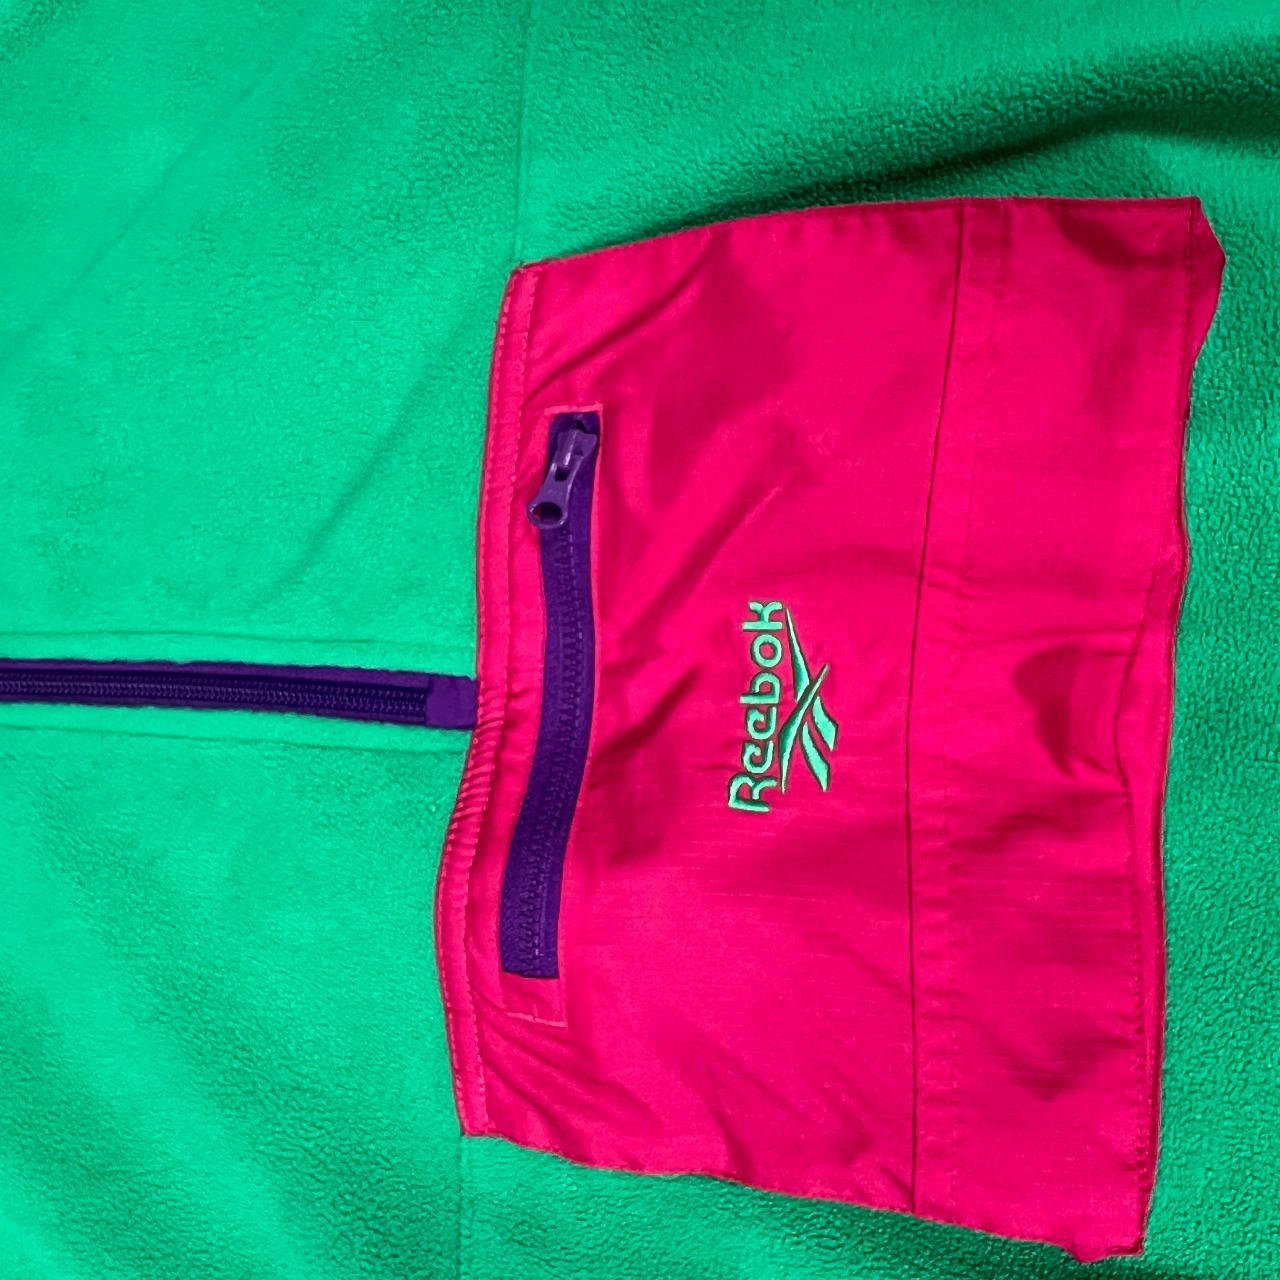 Reebok Men's Green and Pink Sweatshirt | Depop